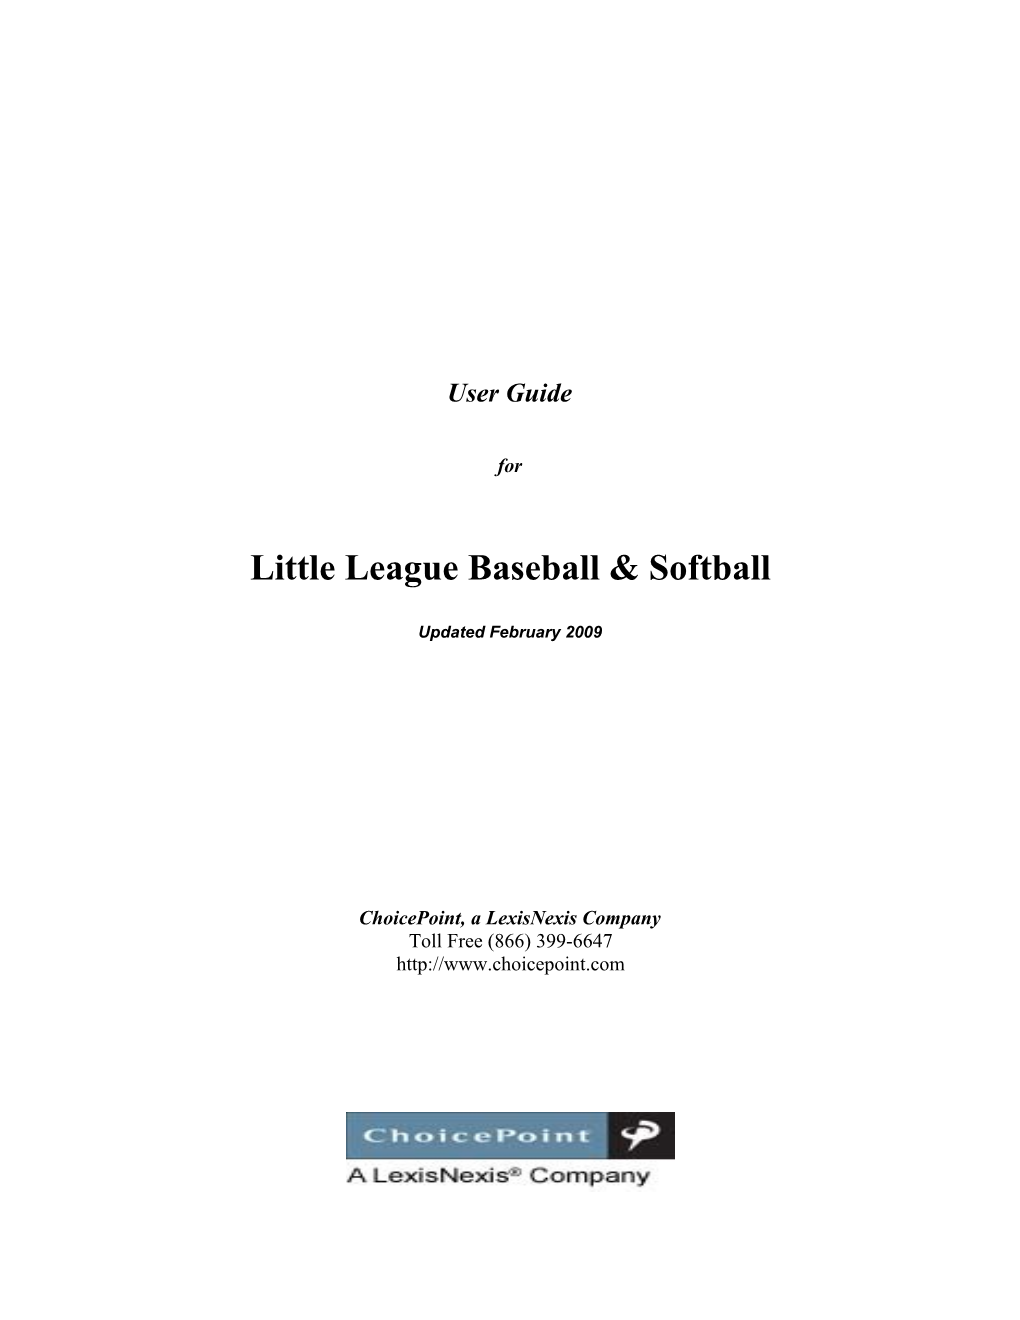 Little League Baseballsoftball